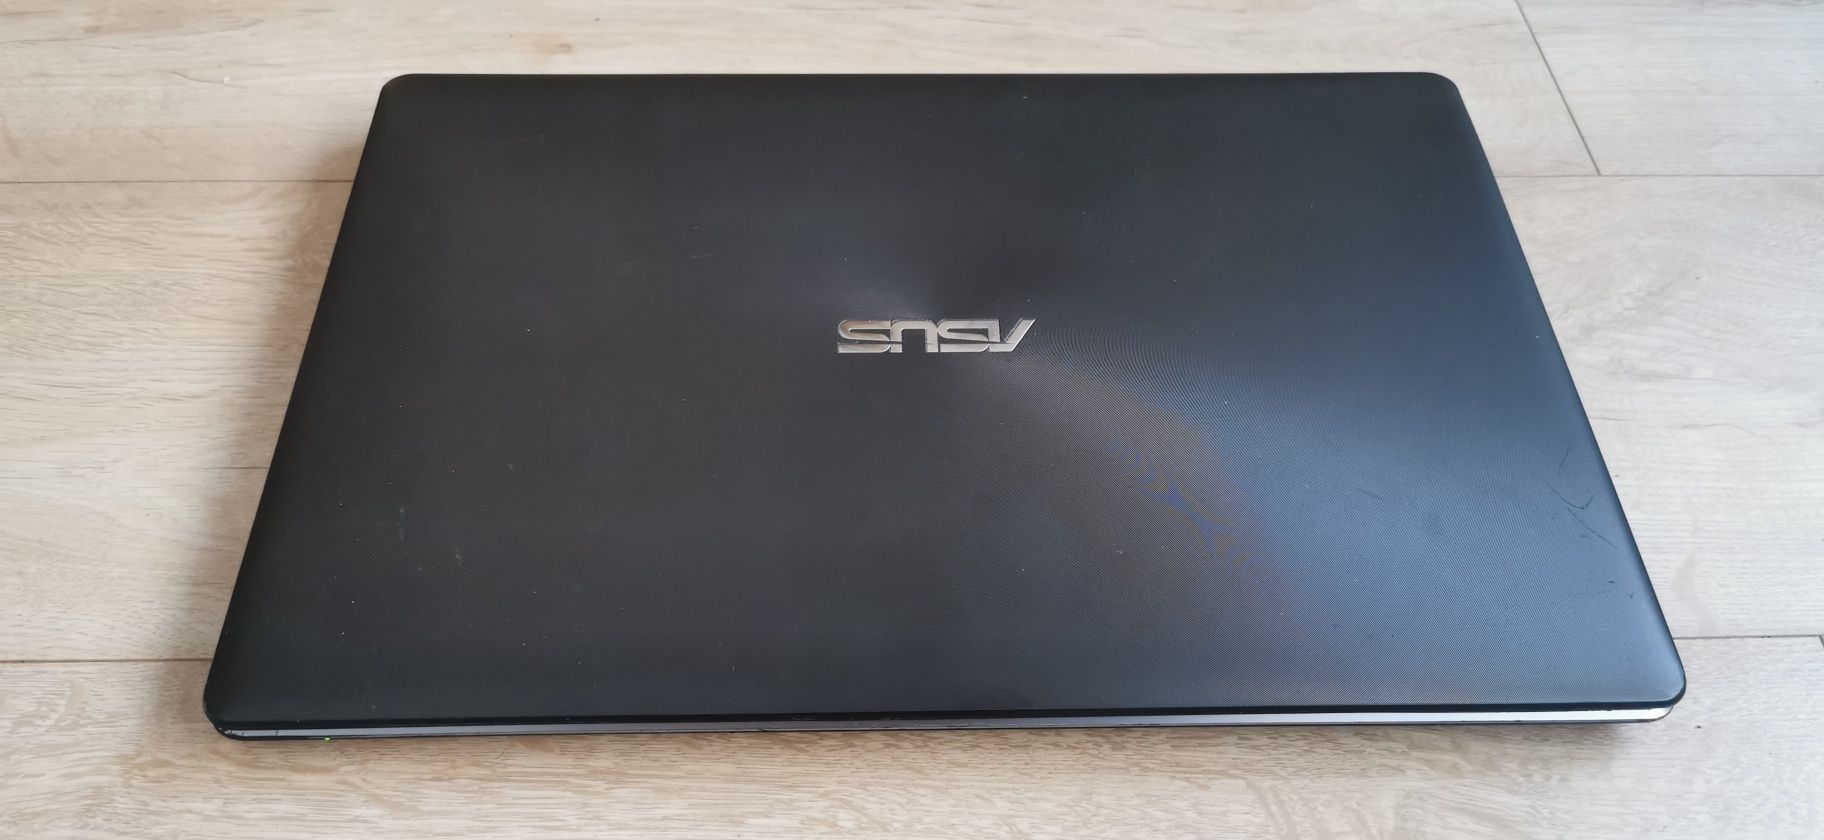 Laptop Asus R510d